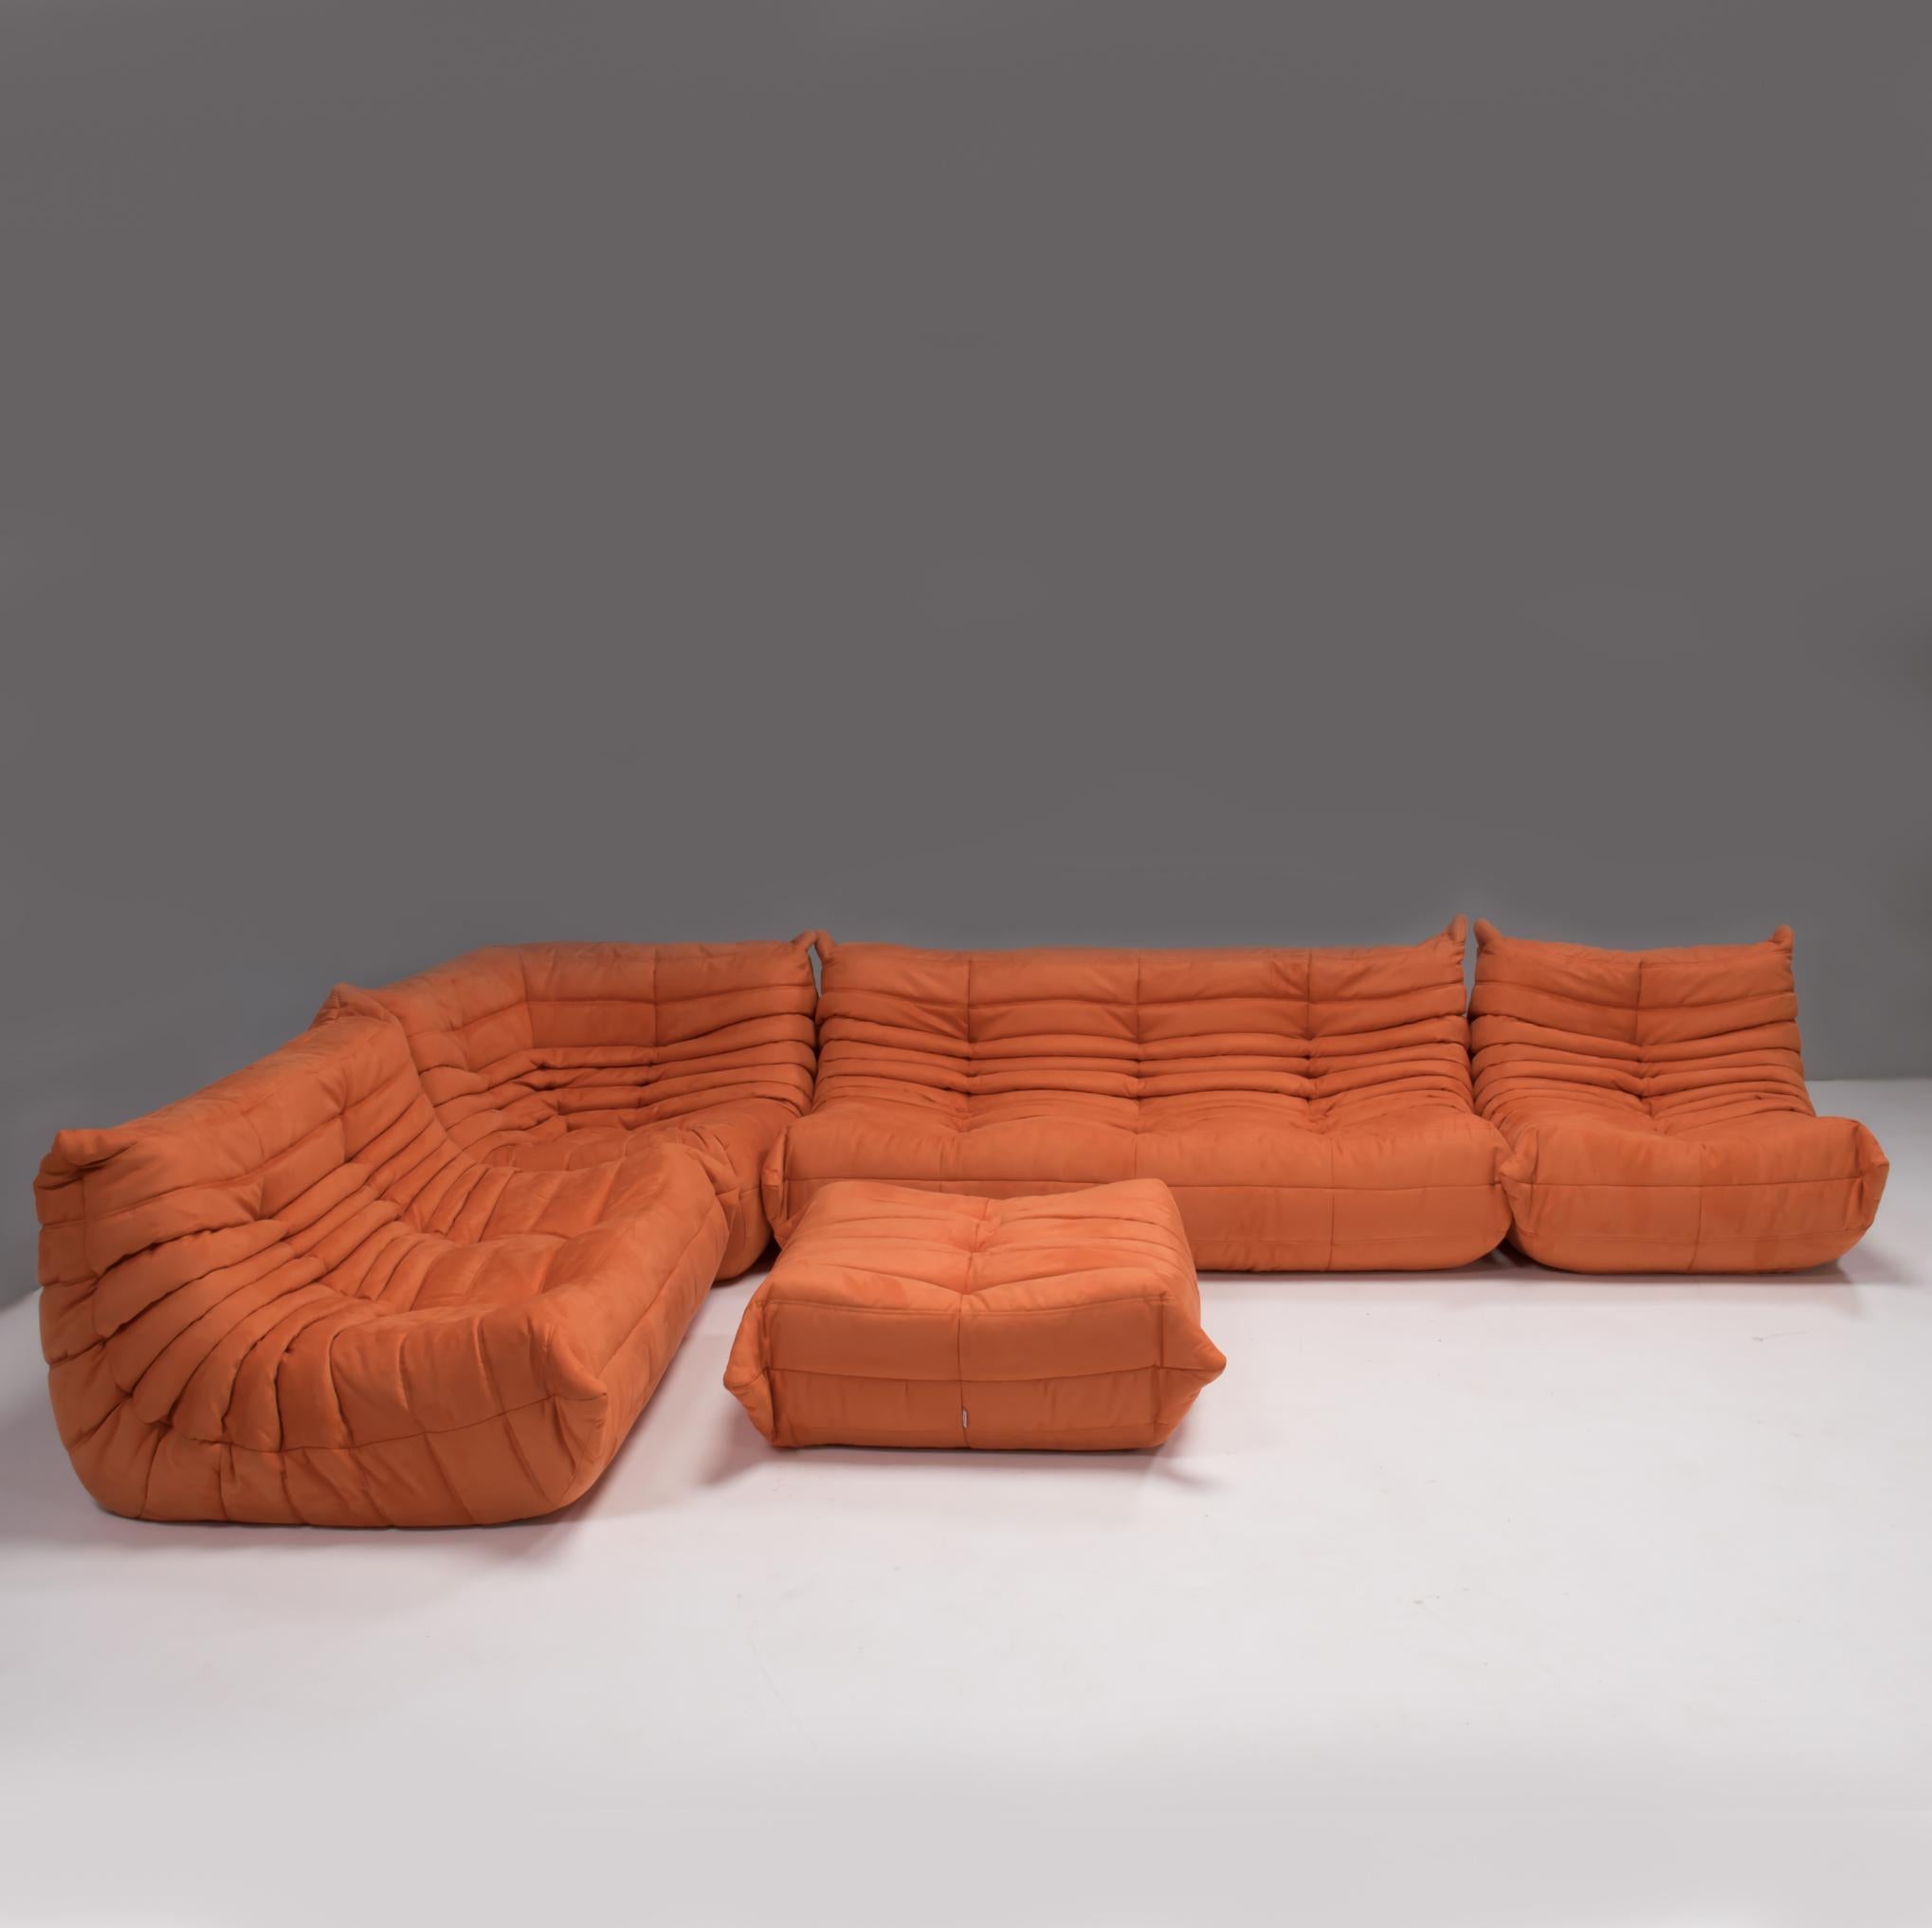 Die ikonische orangefarbene Sofagarnitur Togo, ursprünglich von Michel Ducaroy für Ligne Roset im Jahr 1973 entworfen, ist zu einem Designklassiker der Jahrhundertmitte geworden.

Die Sofas wurden neu gepolstert und mit einem weichen, leuchtend